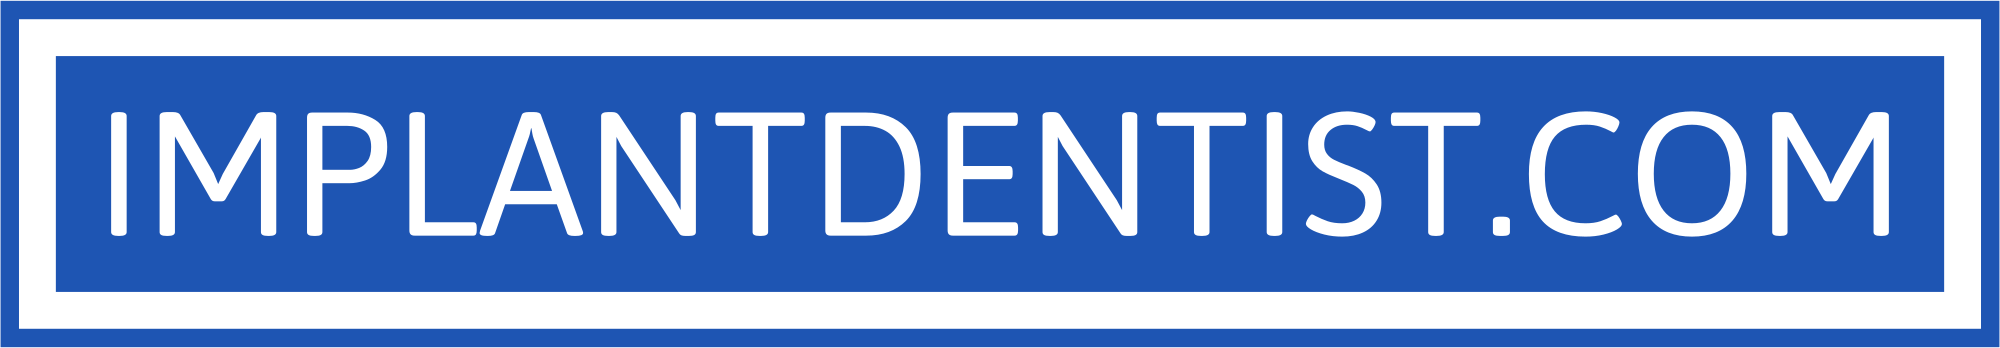 ImplantDentist.com - Ridgewood NJ - Dental Implants